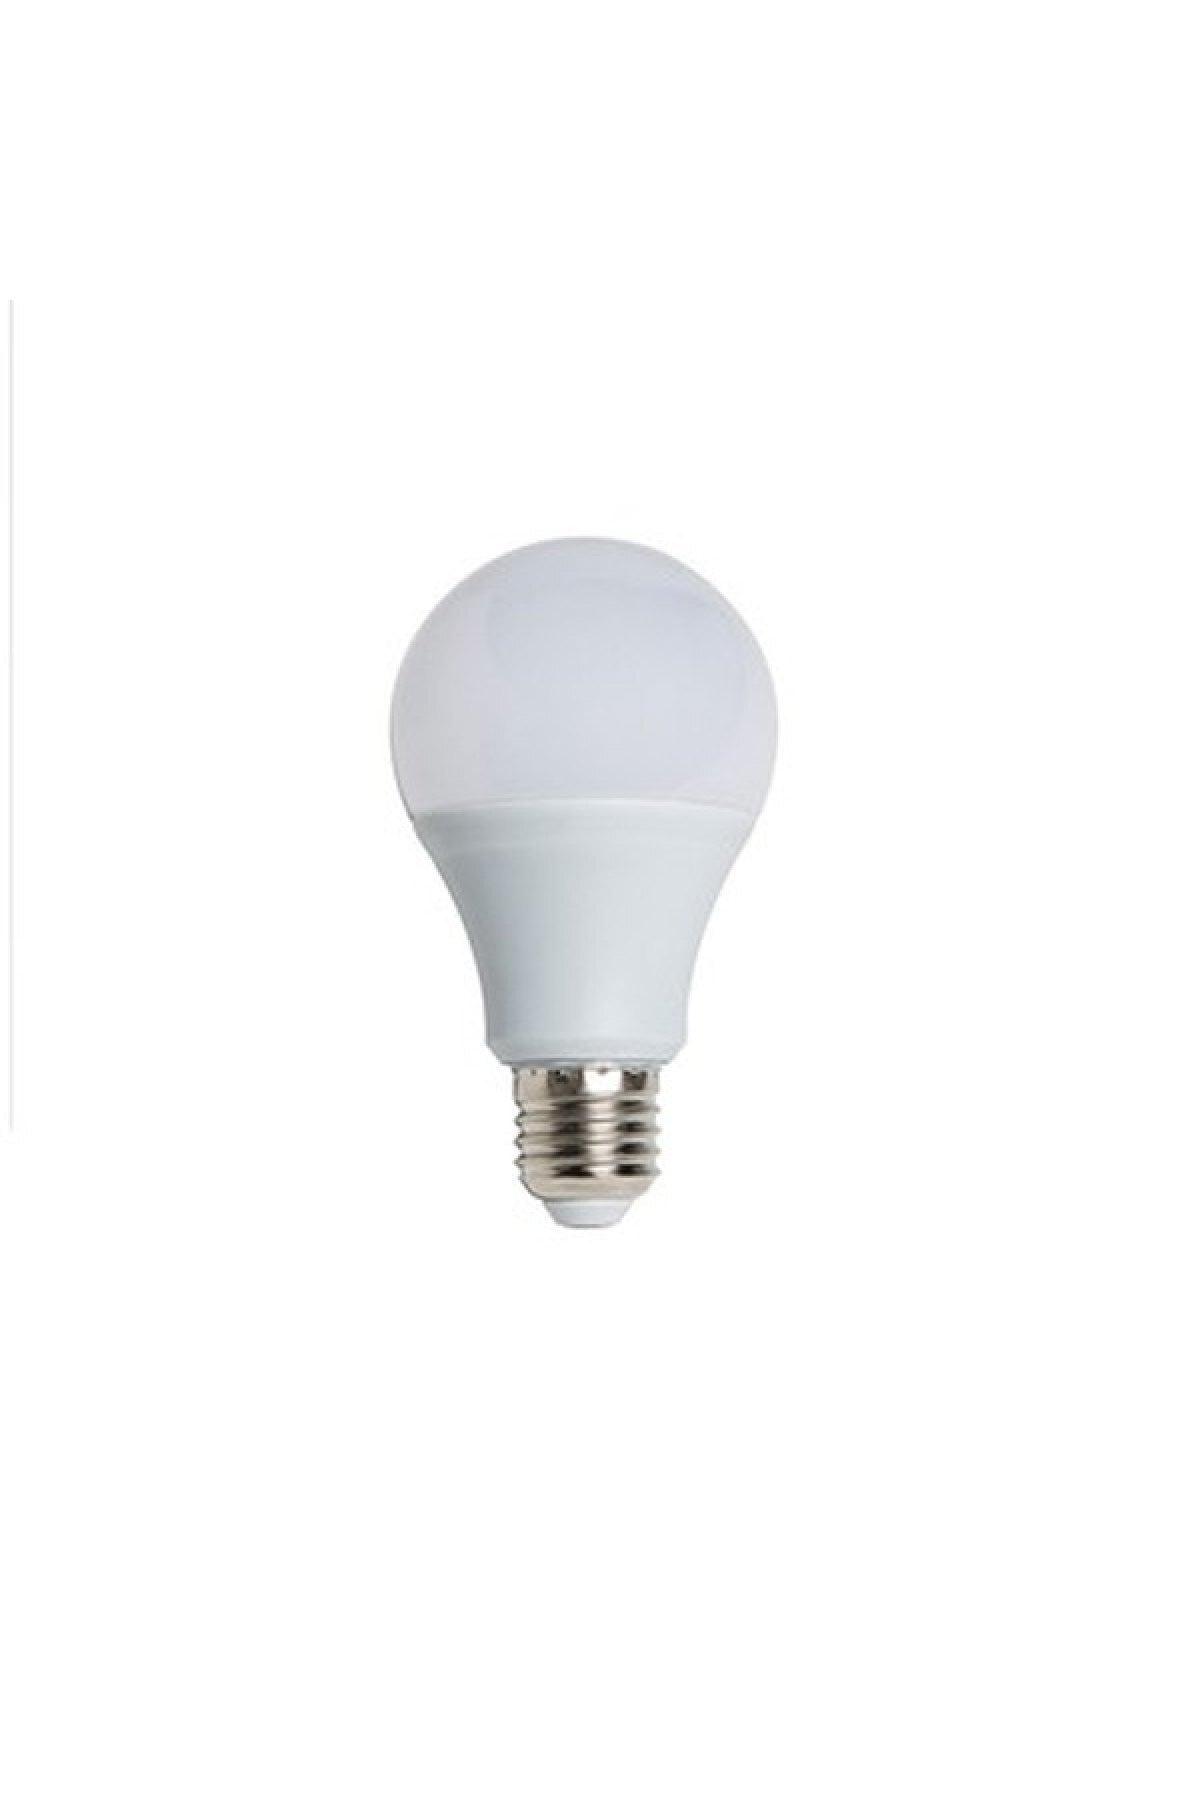 10 Pcs 9w Energy Saving Led Bulb Light